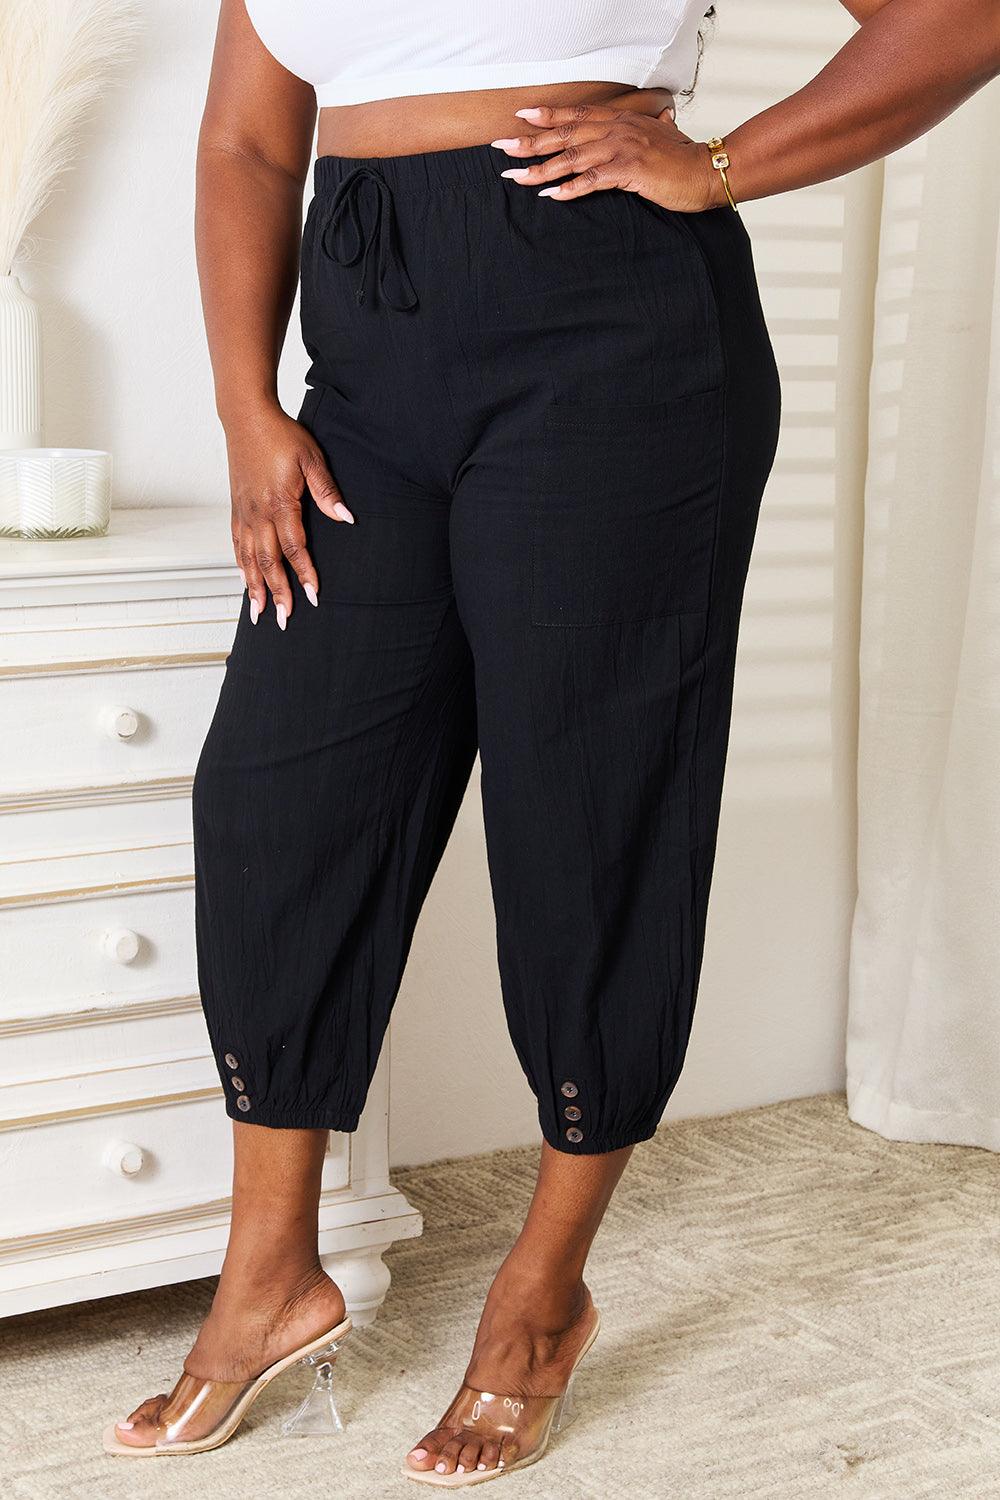 Bona Fide Fashion - Decorative Button Cropped Pants - Women Fashion - Bona Fide Fashion